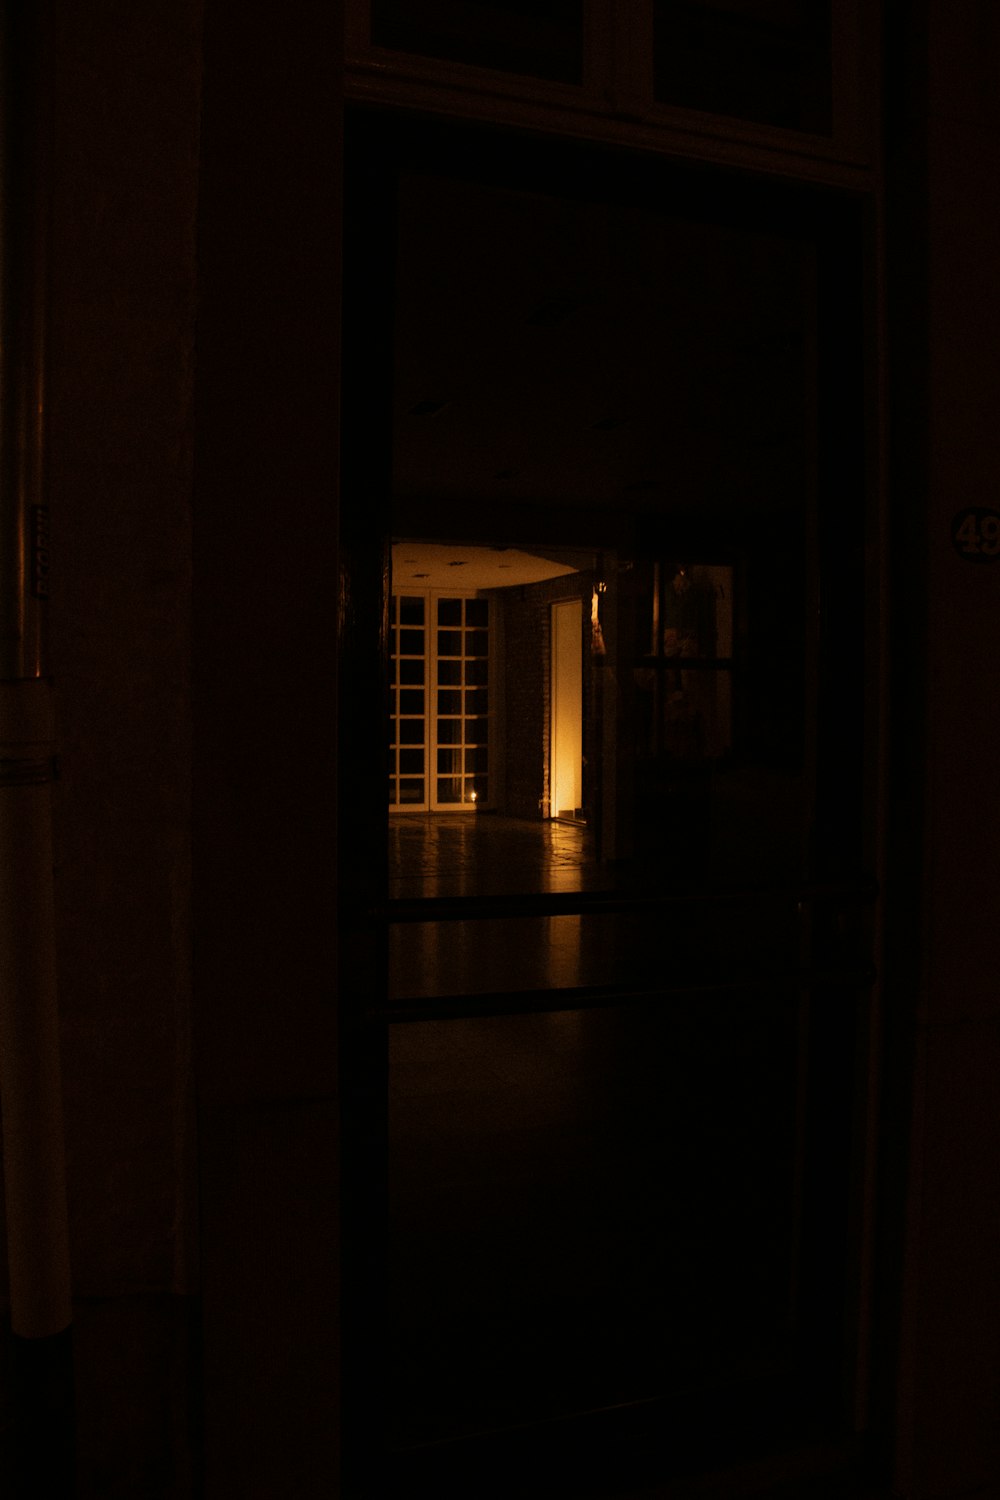 eine offene Tür in einem dunklen Raum in der Nacht